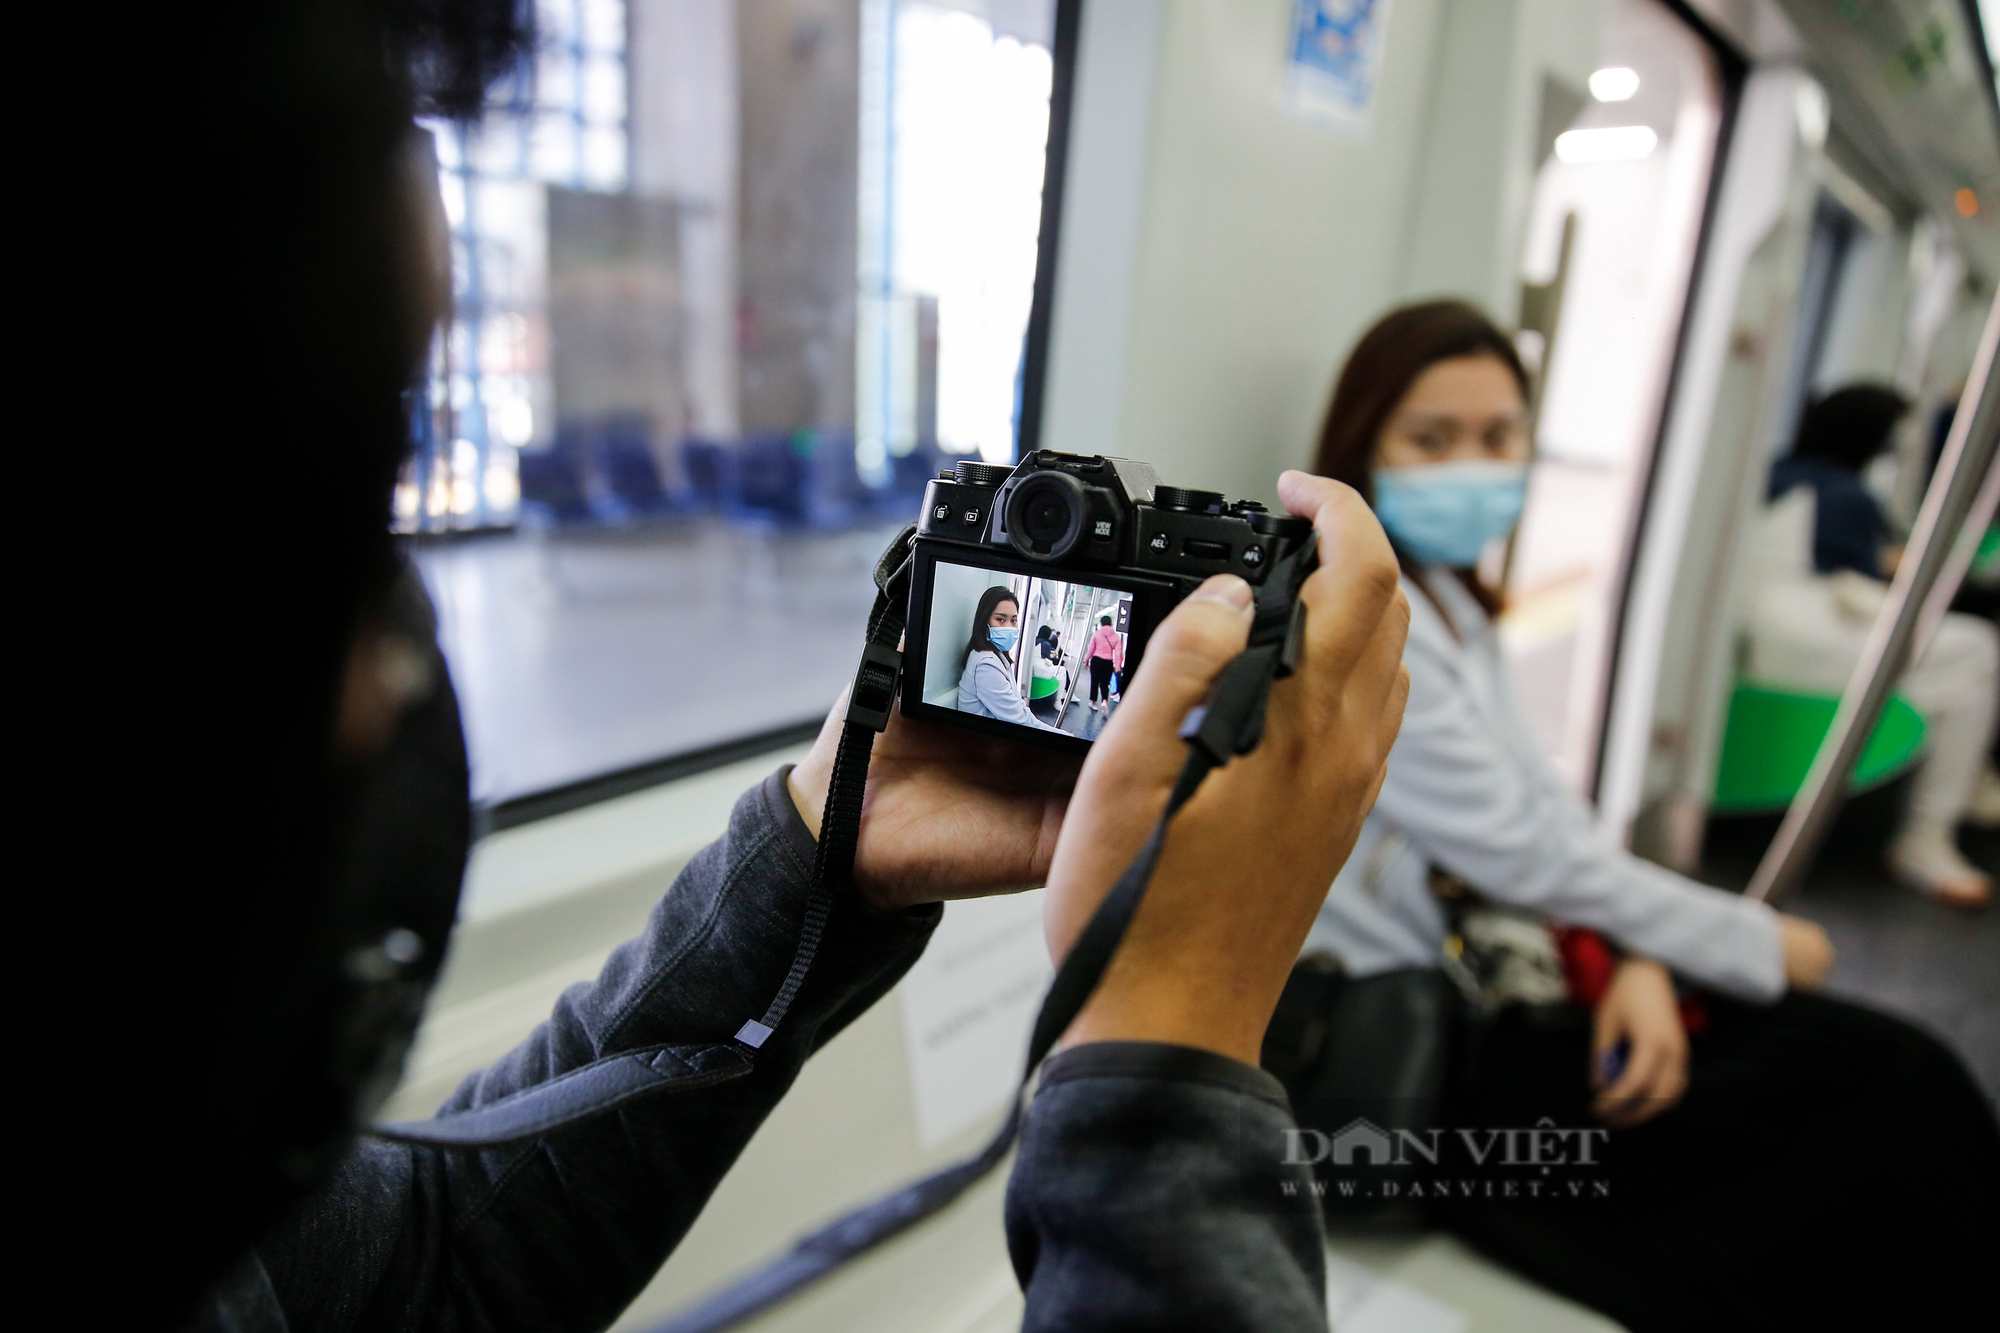 Ga tàu Cát Linh - Hà Đông bất ngờ vắng vẻ, giới trẻ Hà Nội rủ nhau đến chụp ảnh check-in  - Ảnh 9.